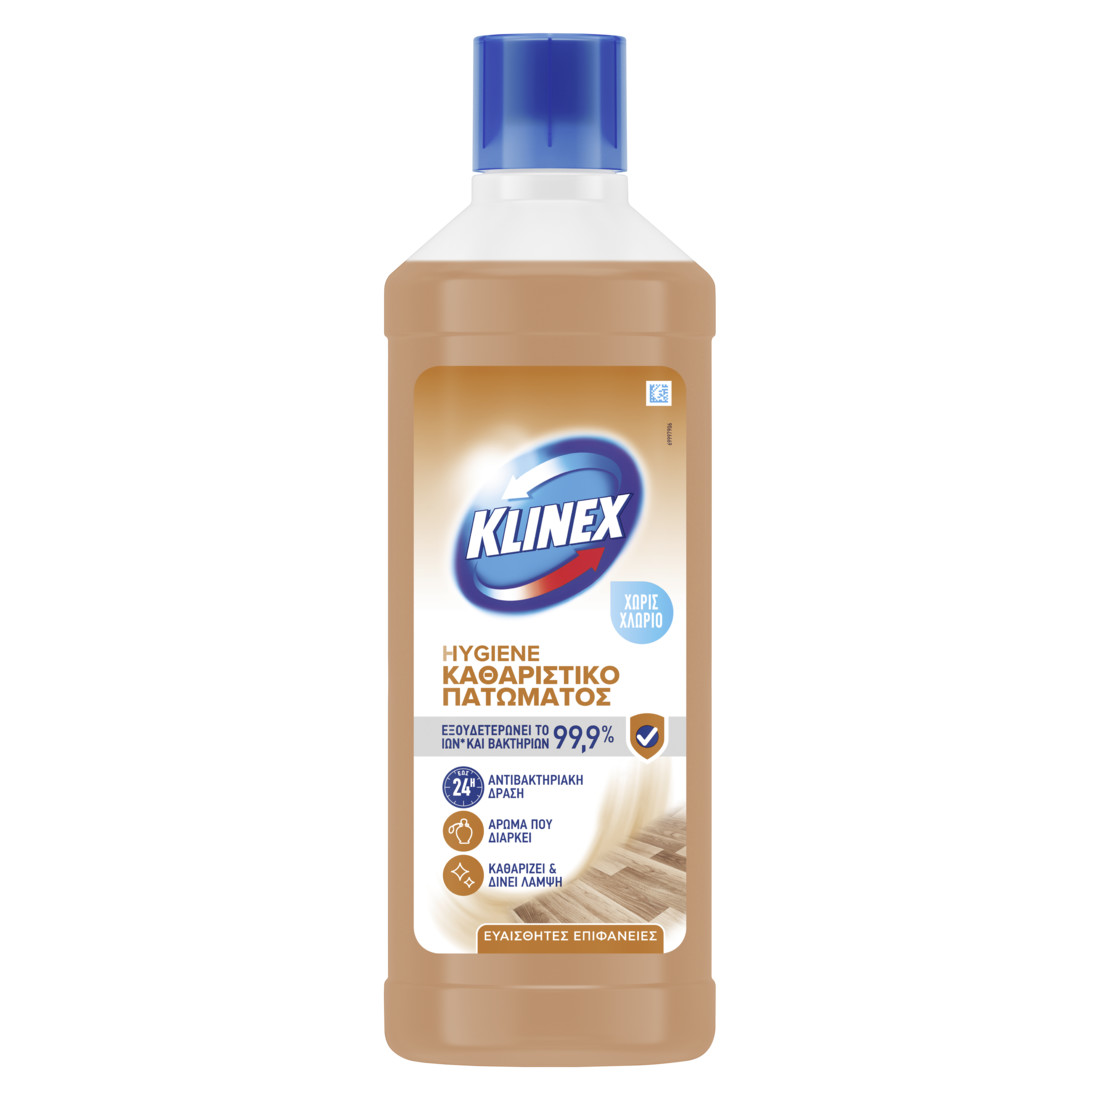 Καθαριστικό Πατώματος Klinex Hygiene για Ευαίσθητες επιφάνειες